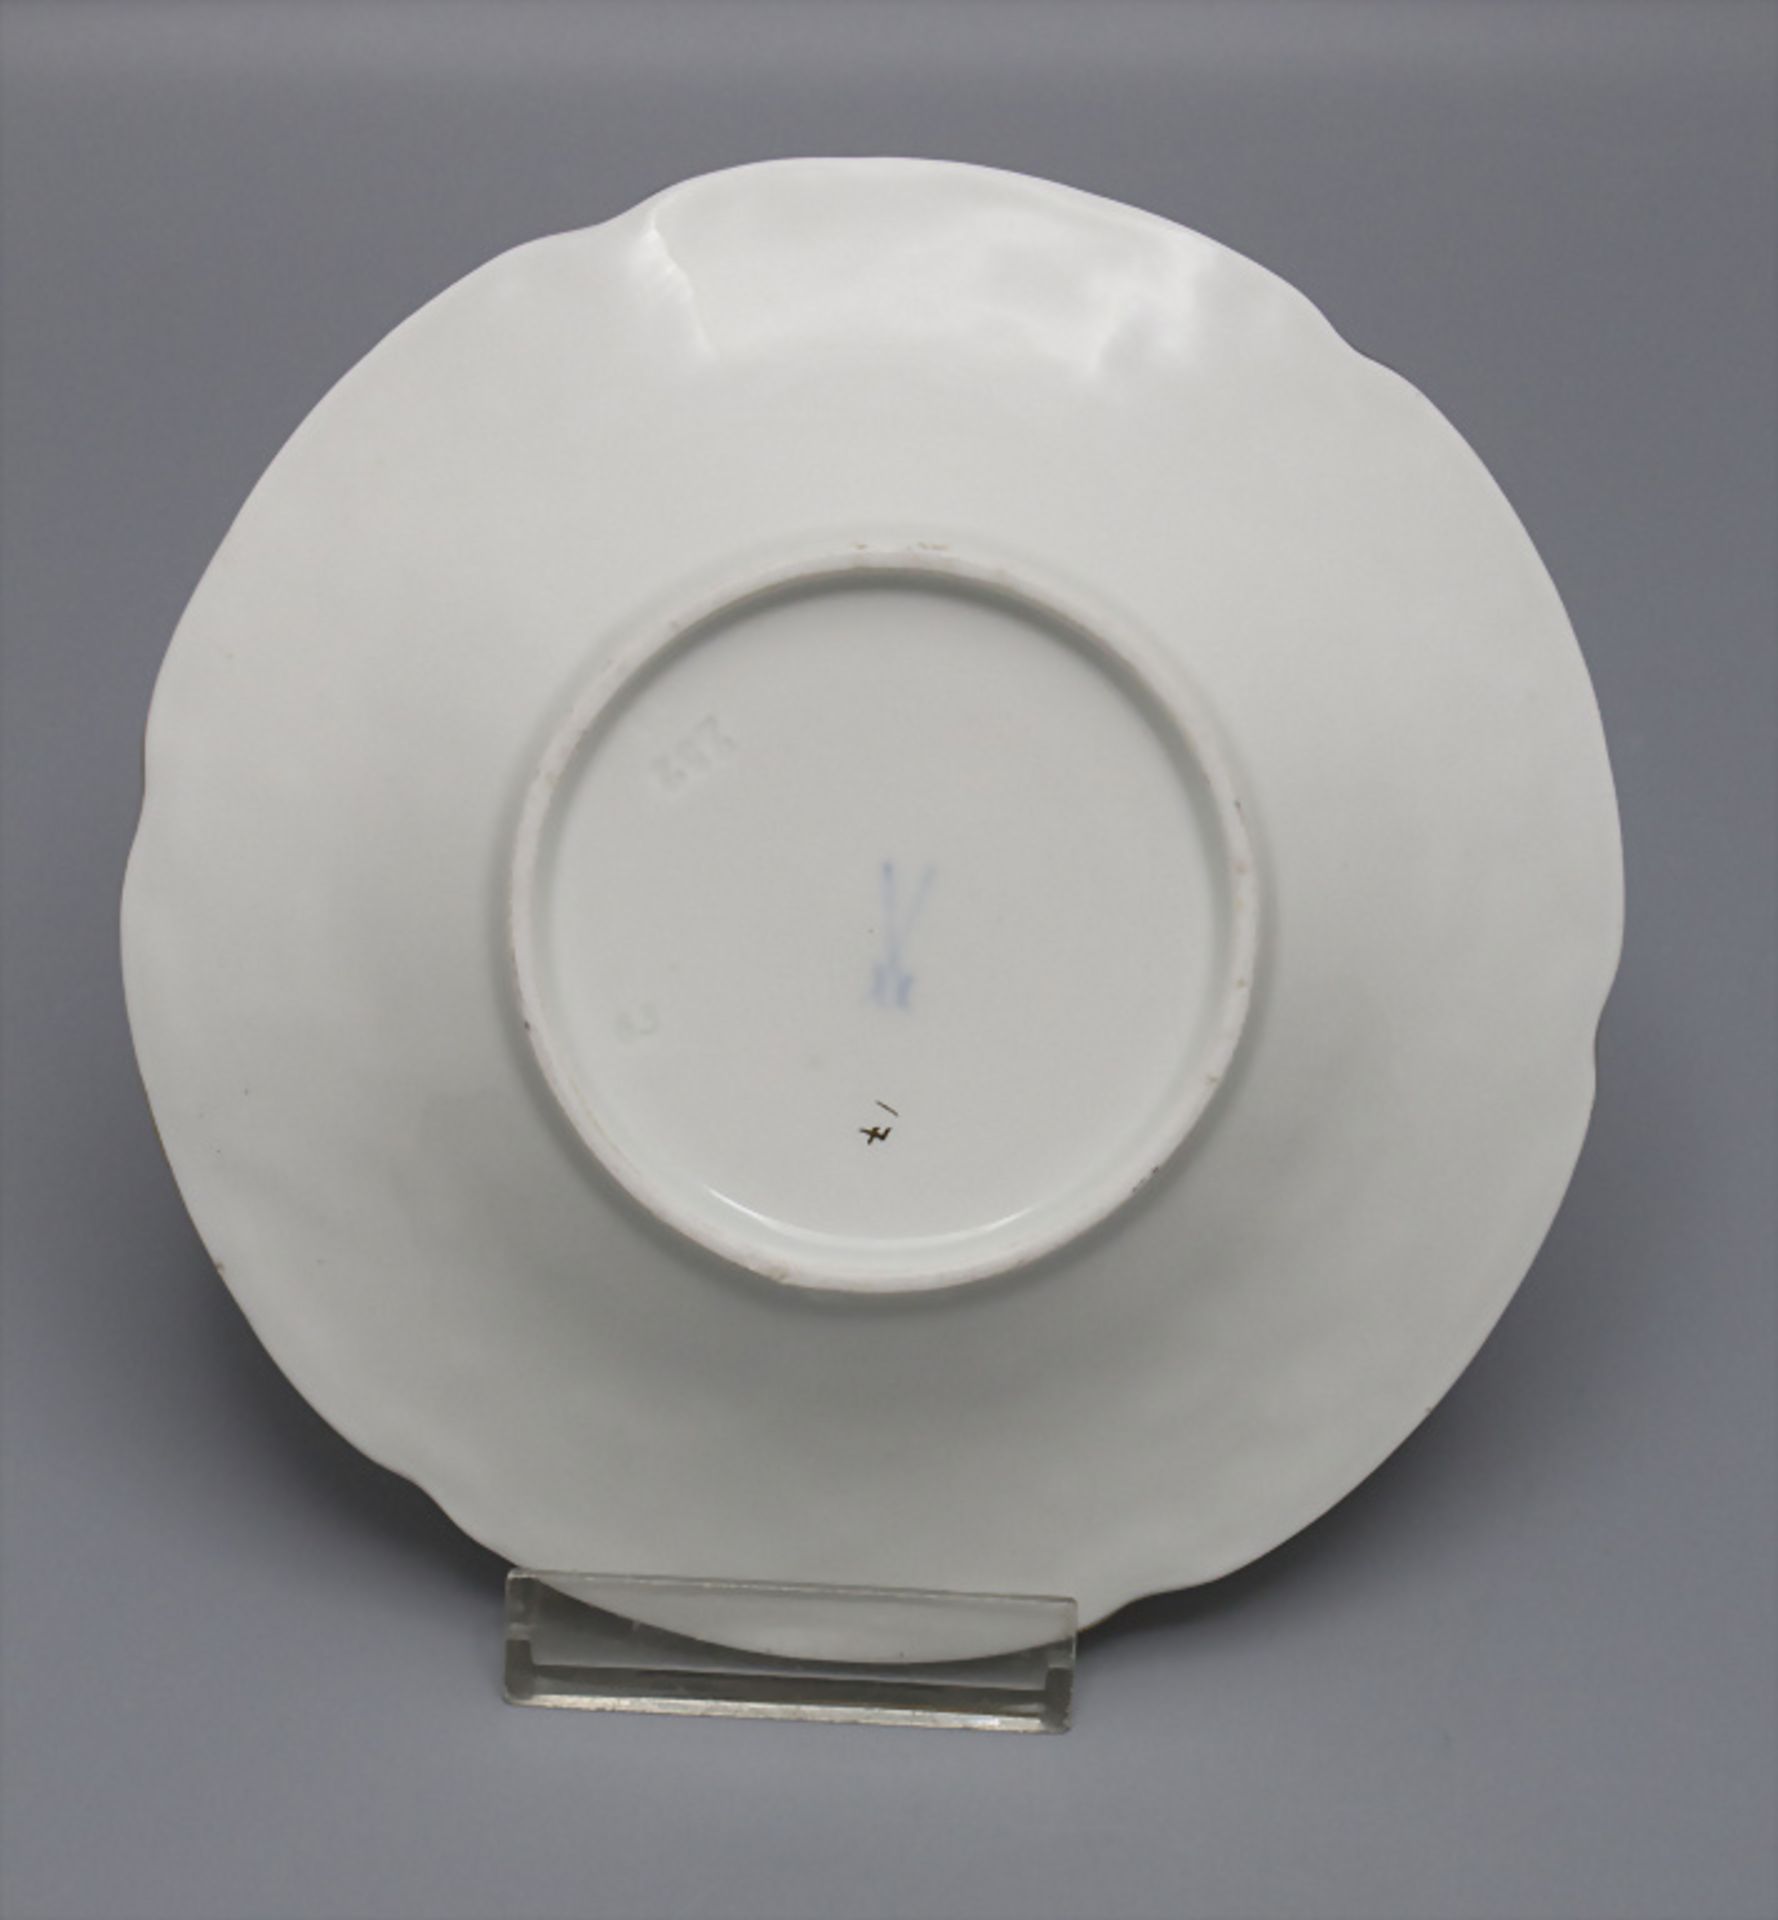 Porzellantasse und Untertasse / A porcelain cup and saucer, Meissen, 20. Jh. - Bild 2 aus 4